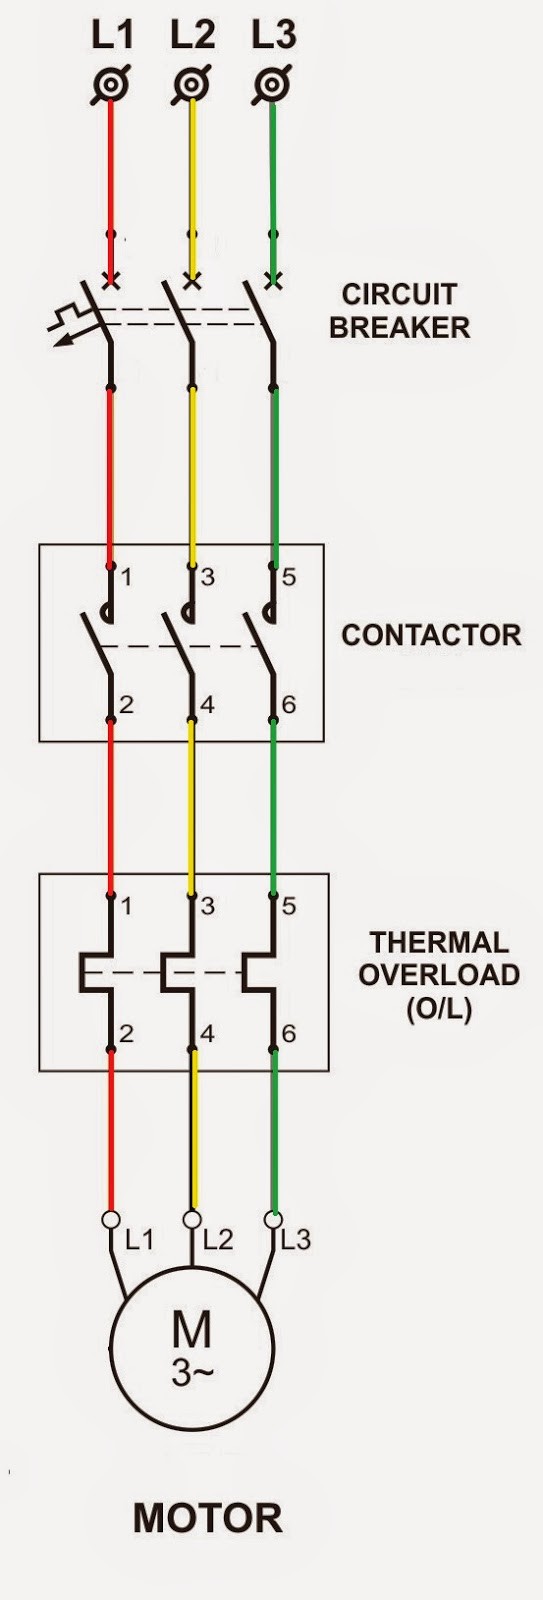 Motor Starter Wiring Diagram Pdf Dol Power Circuit